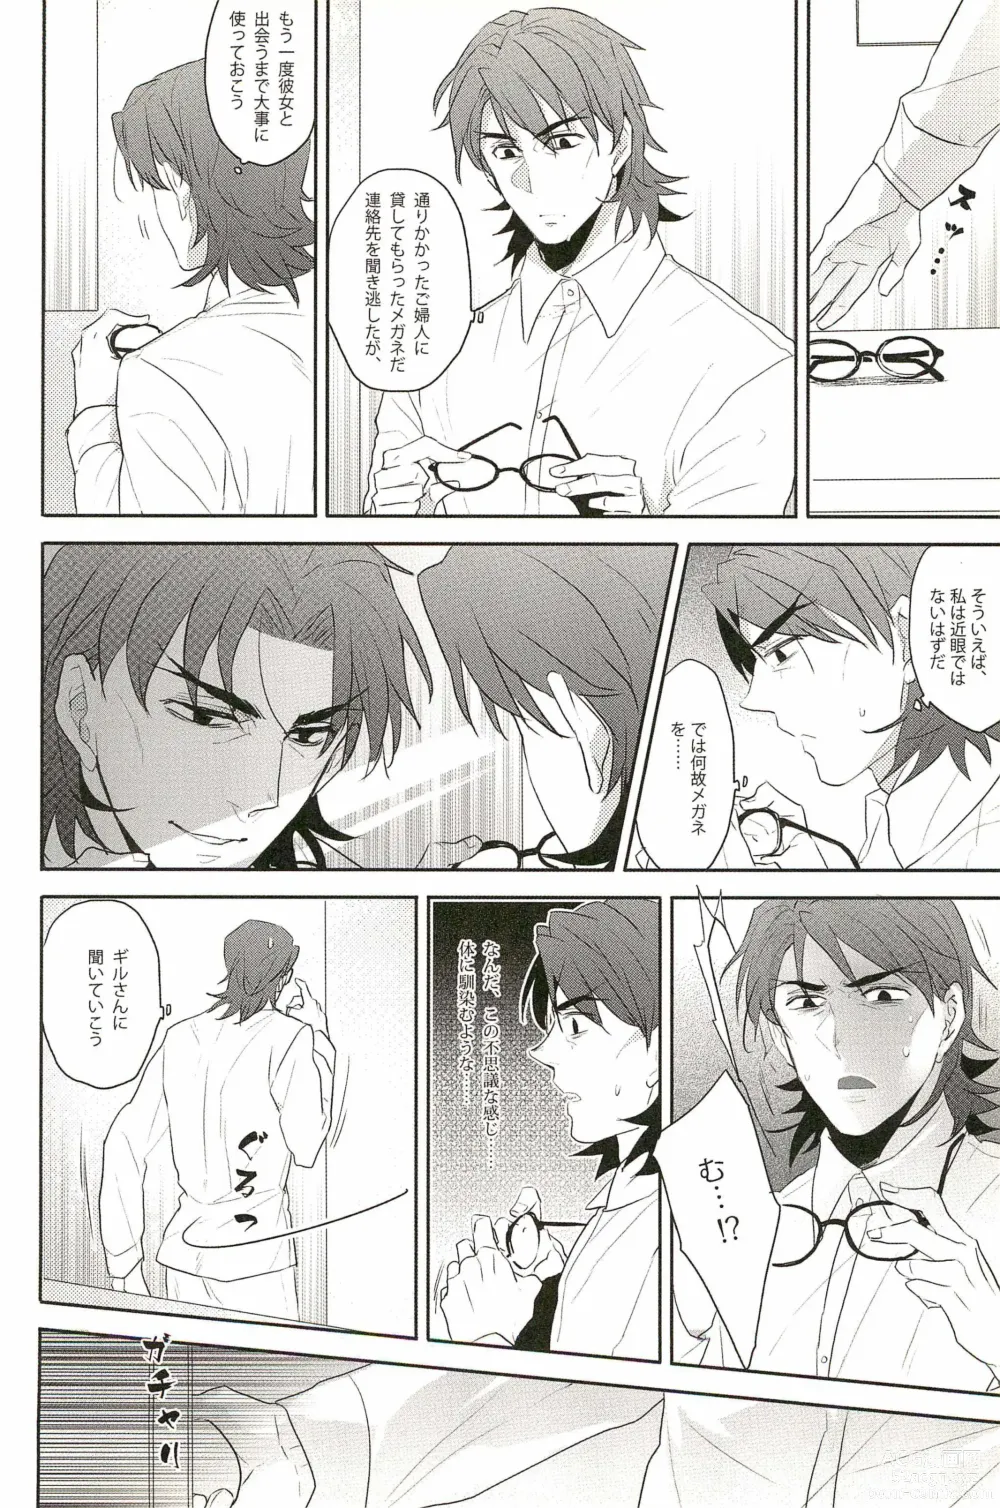 Page 12 of doujinshi Warera Dosei Shite Iru.